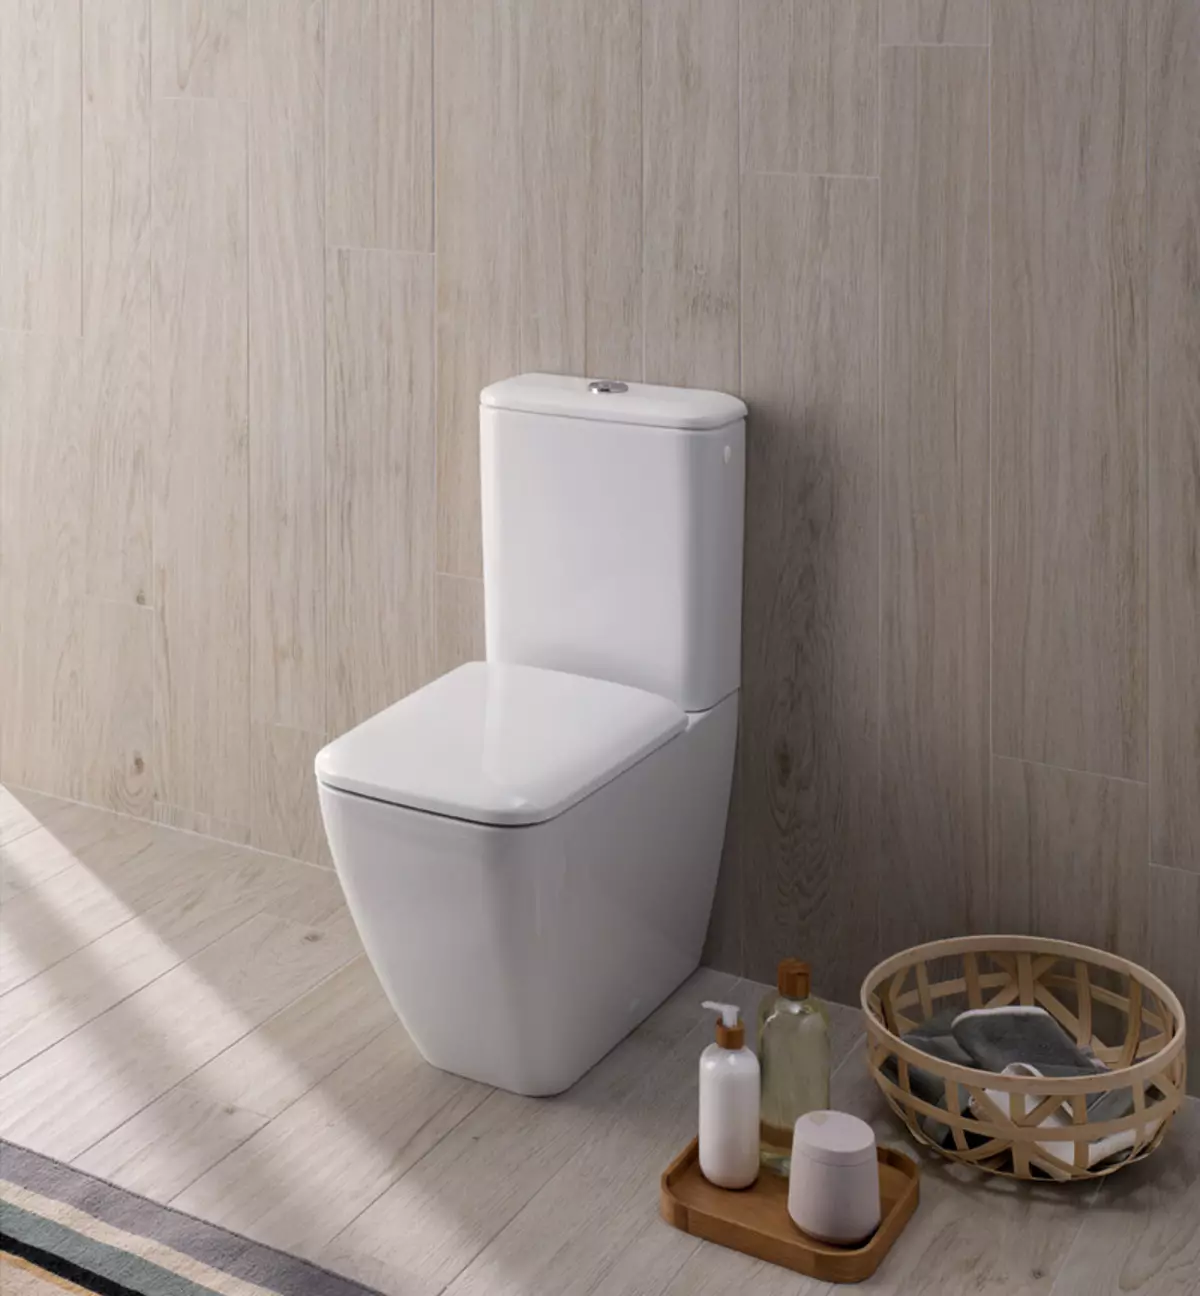 बेकार फ्लाएट्स शौचालय: रिमले रिम भन्दा कुन मोडेलहरू राम्रो छ? एक ट्या tank ्कीको साथ र यसको बिना शौचालयको कचौरा छनौट गर्दै, पोर्सिलेन वा डरबाट। रेटि बस्न 10533_22